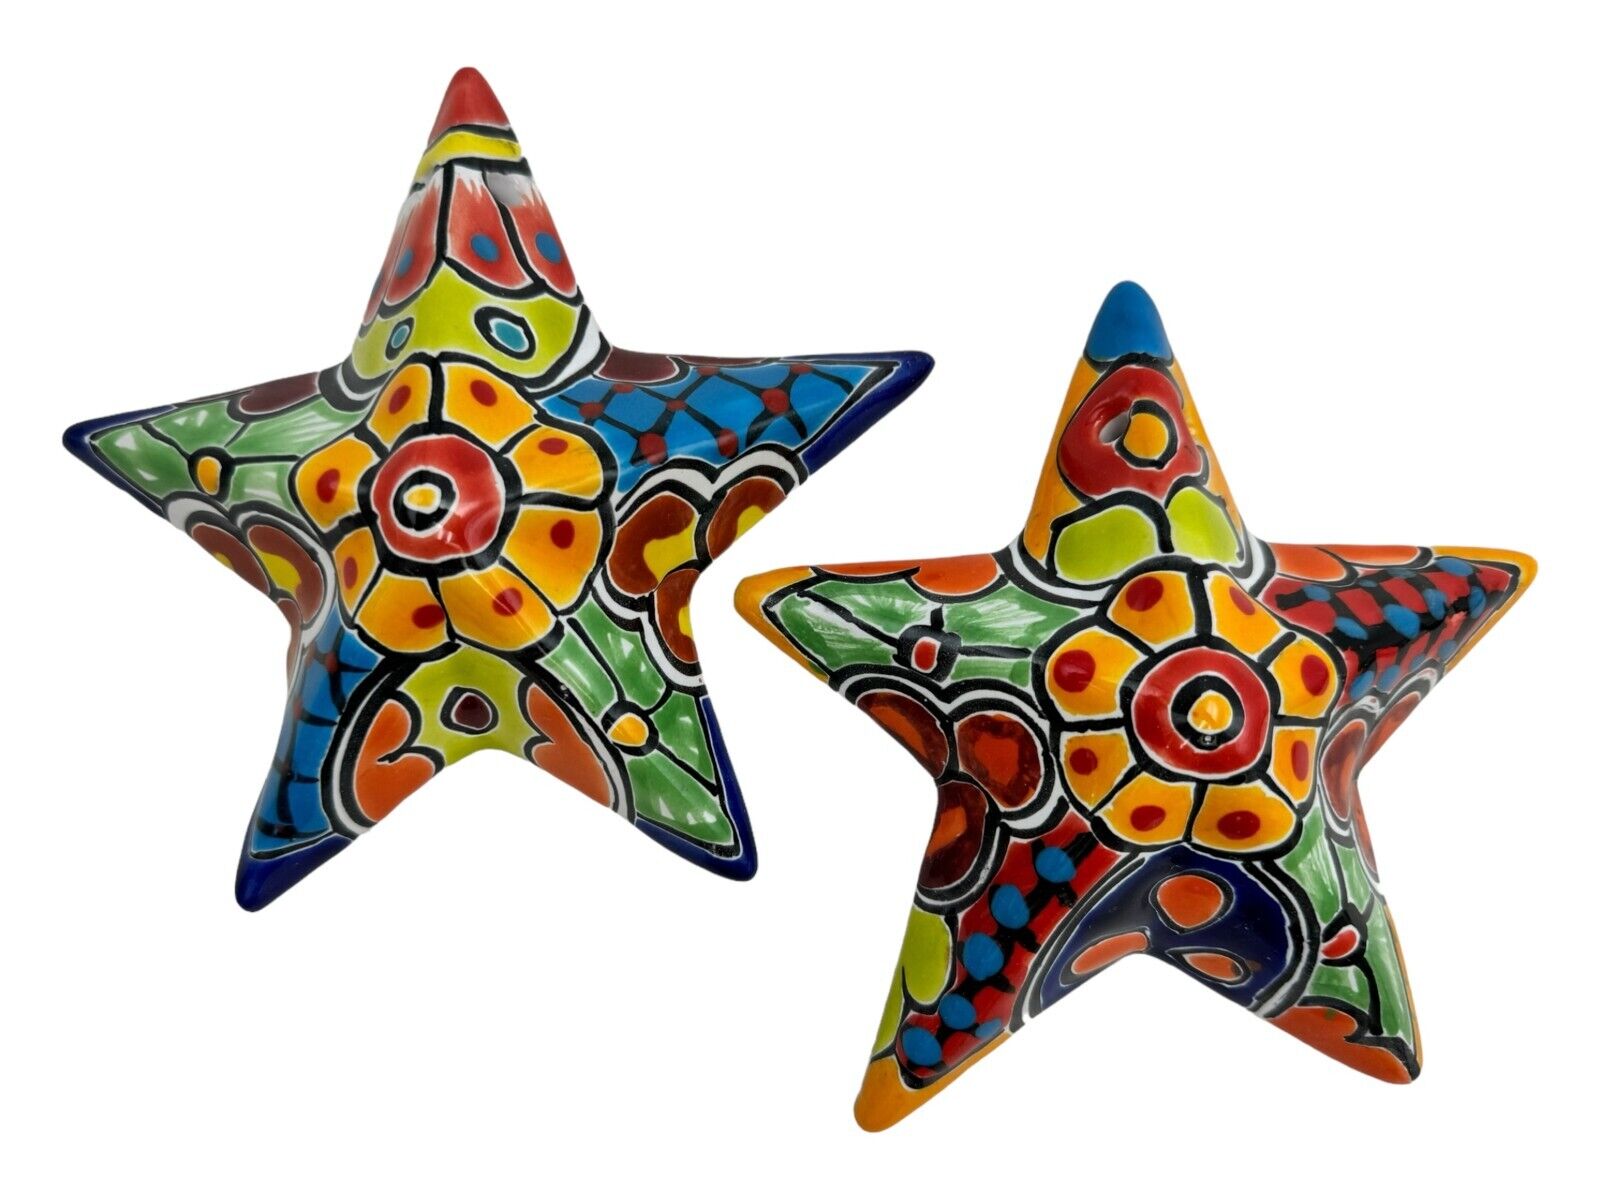 Talavera Star (2) Mexican Pottery Folk Art Multicolor Ceramic Home Decor 6.5”